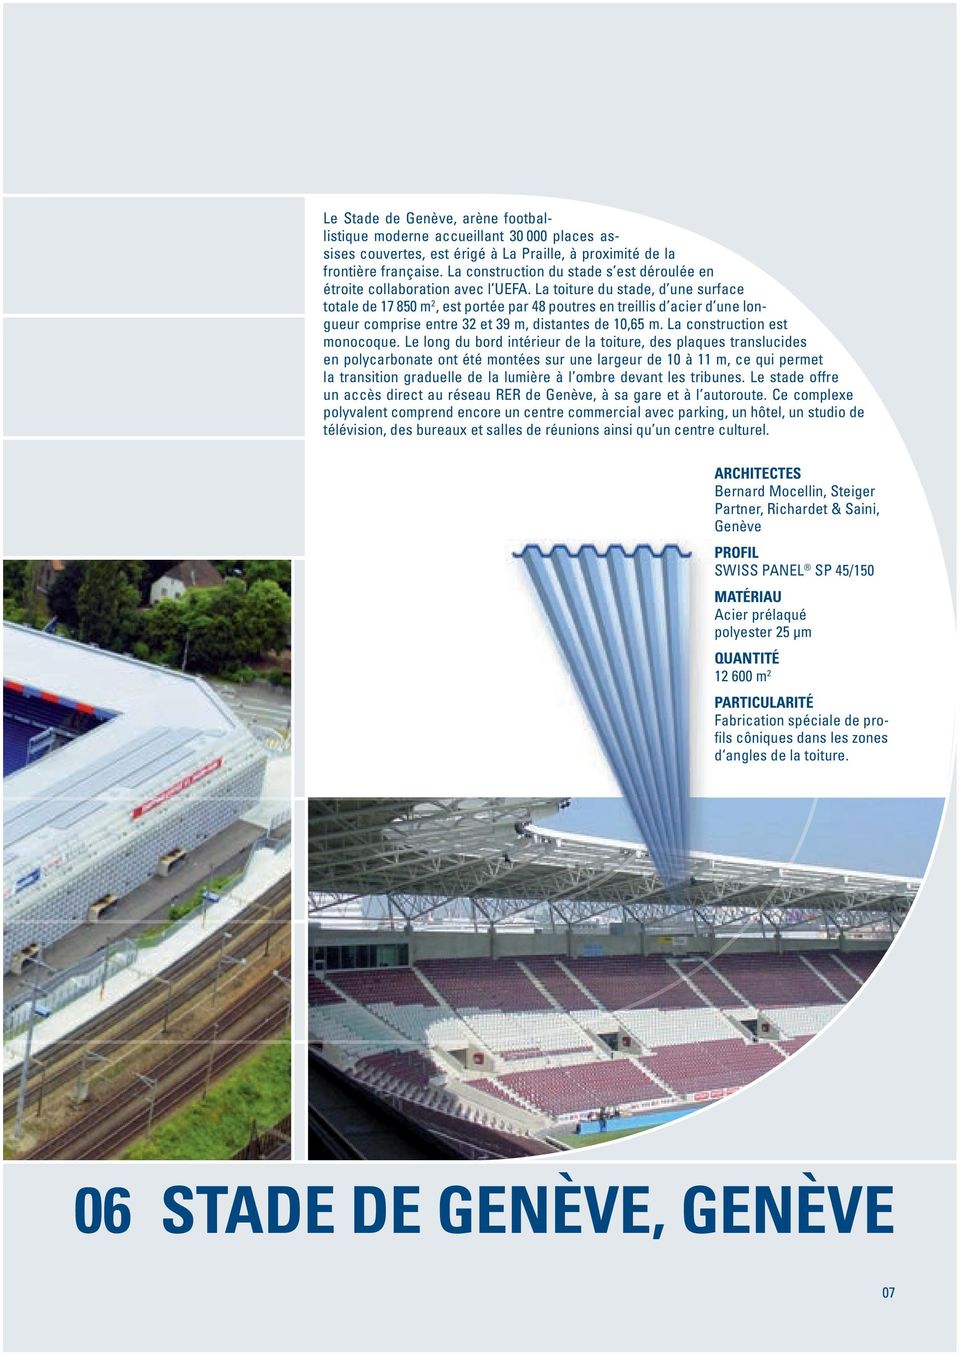 La toiture du stade, d une surface totale de 17 850 m 2, est portée par 48 poutres en treillis d acier d une longueur comprise entre 32 et 39 m, distantes de 10,65 m. La construction est monocoque.